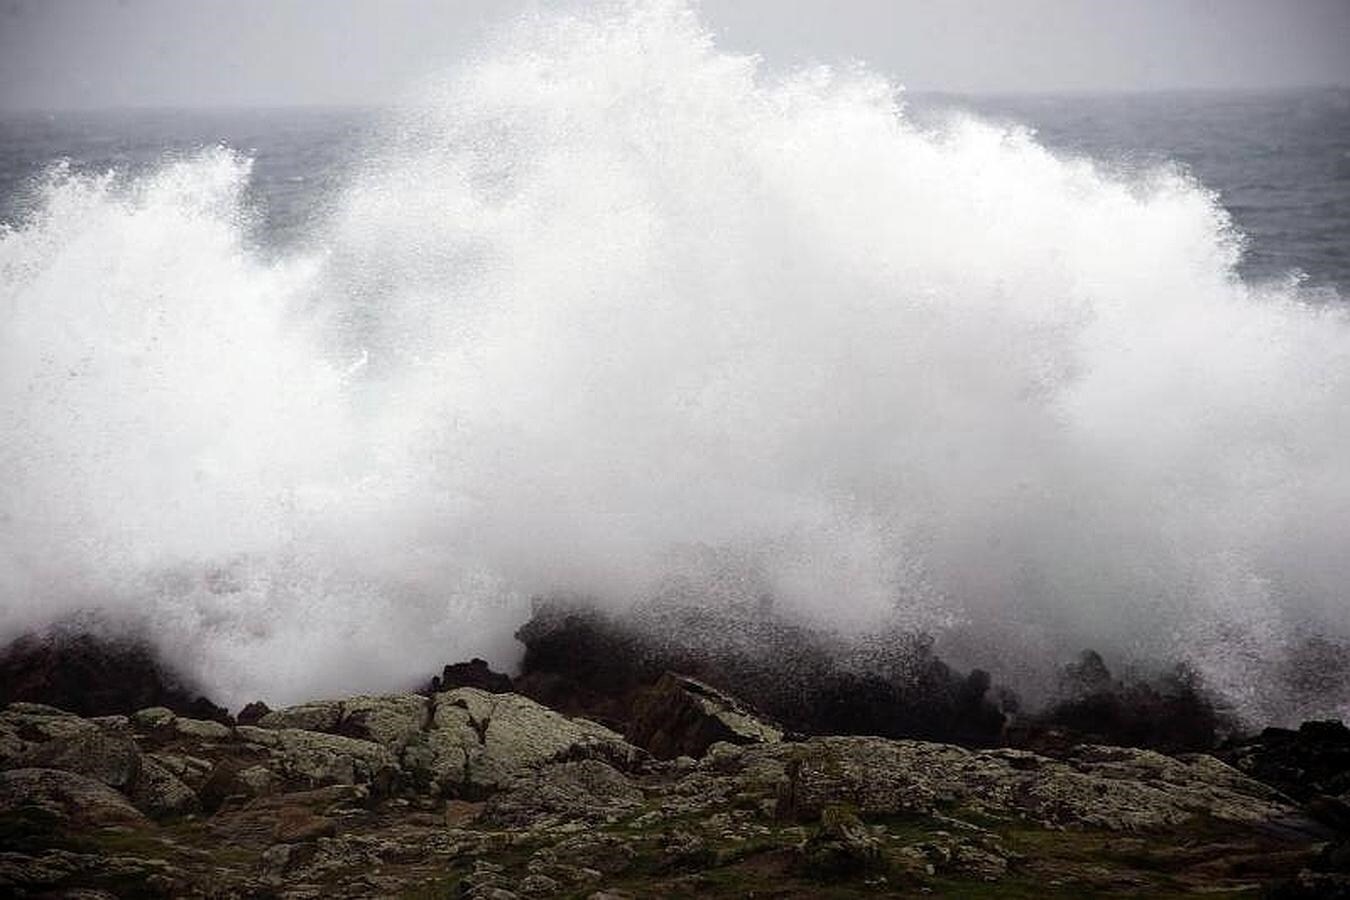 El viento en Ferrol con fuerza 5 a 7 deja mar gruesa o fuerte marejada, visibilidad regular y mar de fondo del noroeste, con olas de 4 a 7 metros